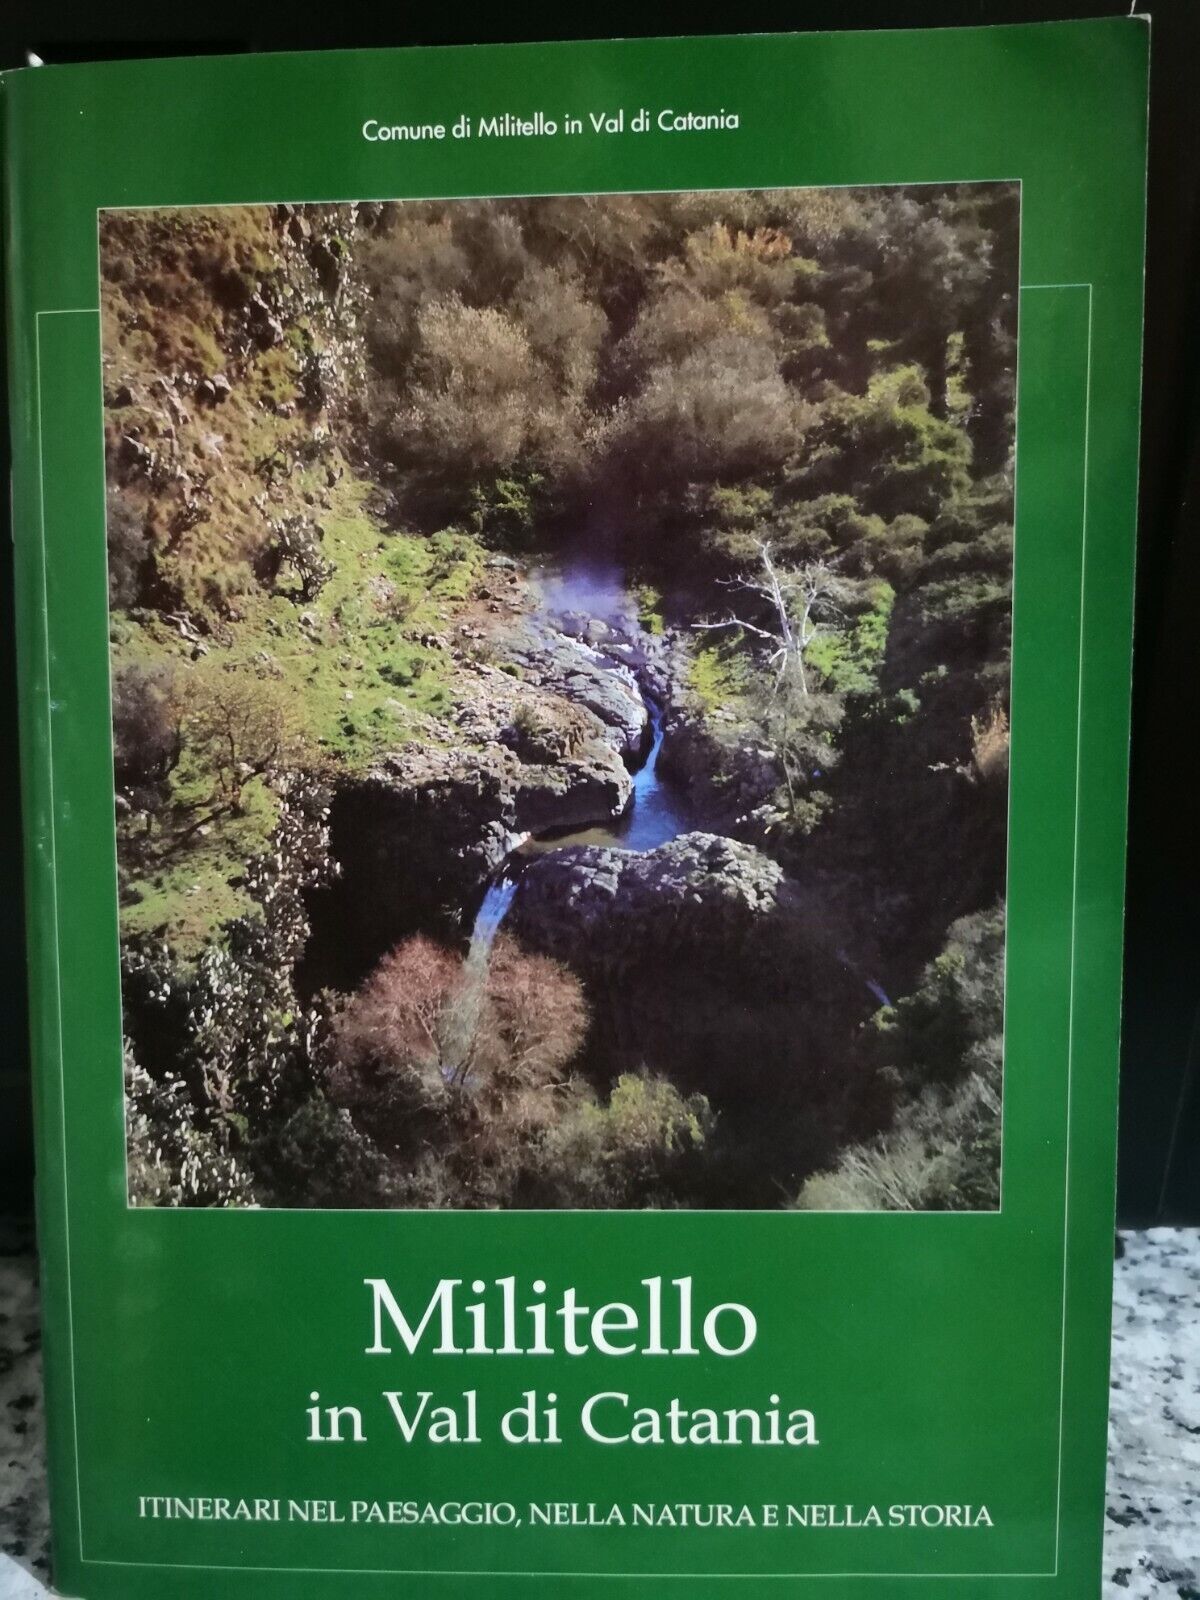  Militello in Val di Catania  di Francesco Alaimo,  Fabio Orlando Editore- F